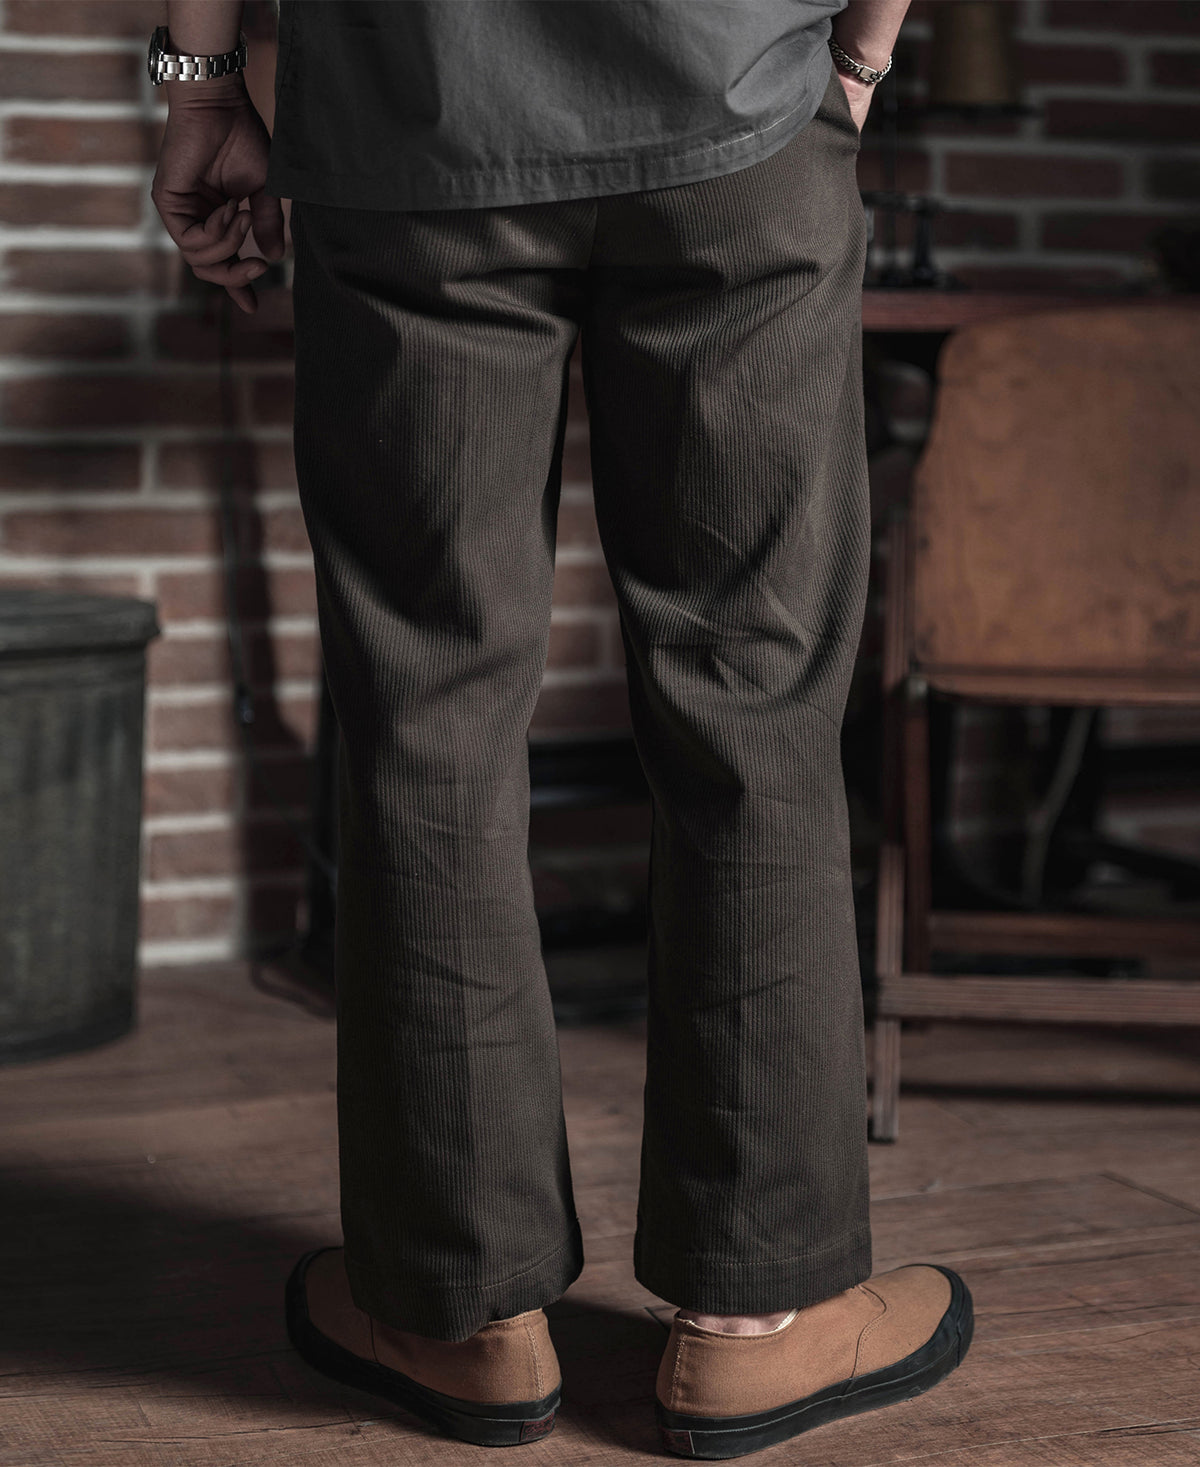 13 oz Cotton Bedford Cord Pants - Brown